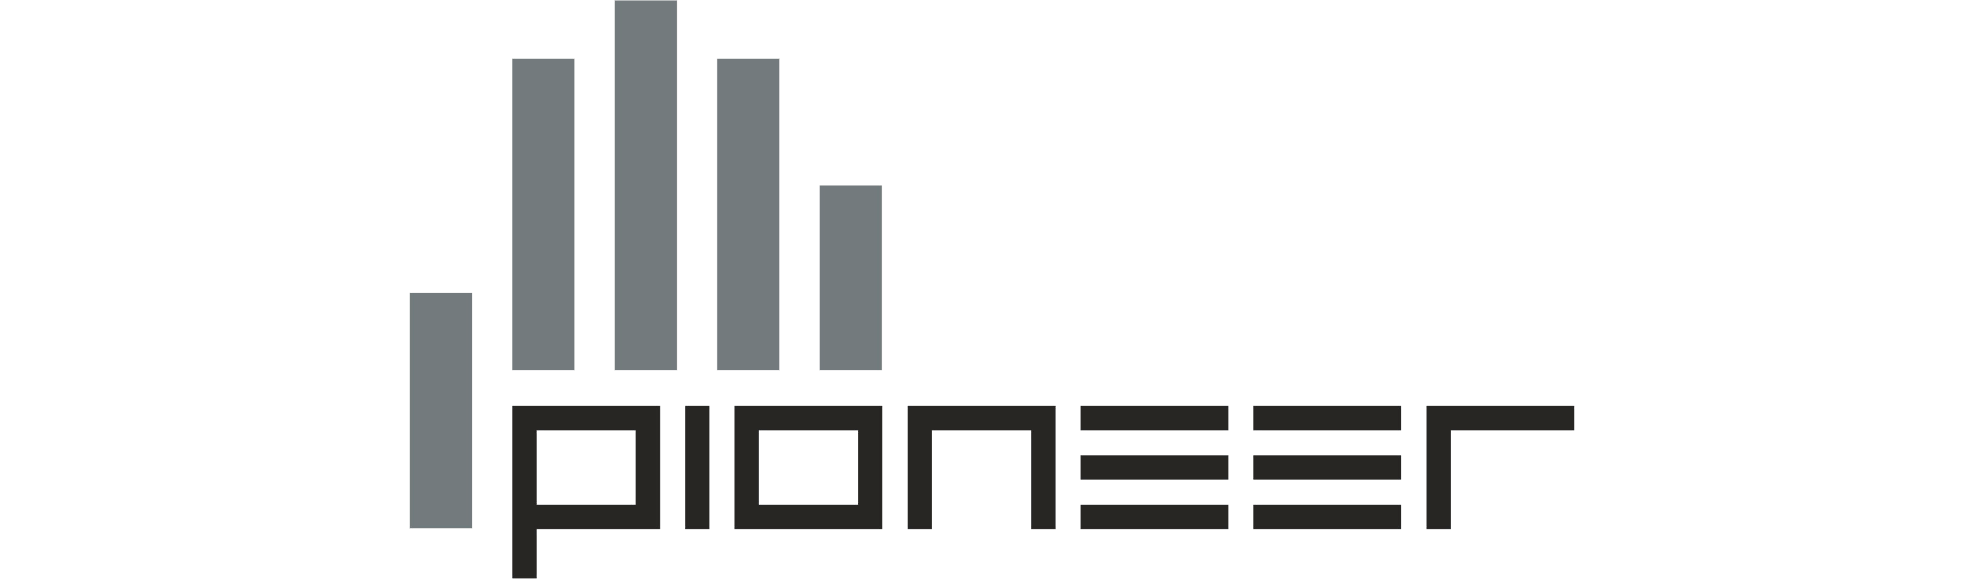 Логотип - Офисные перегородки в ПГК «Пионер»